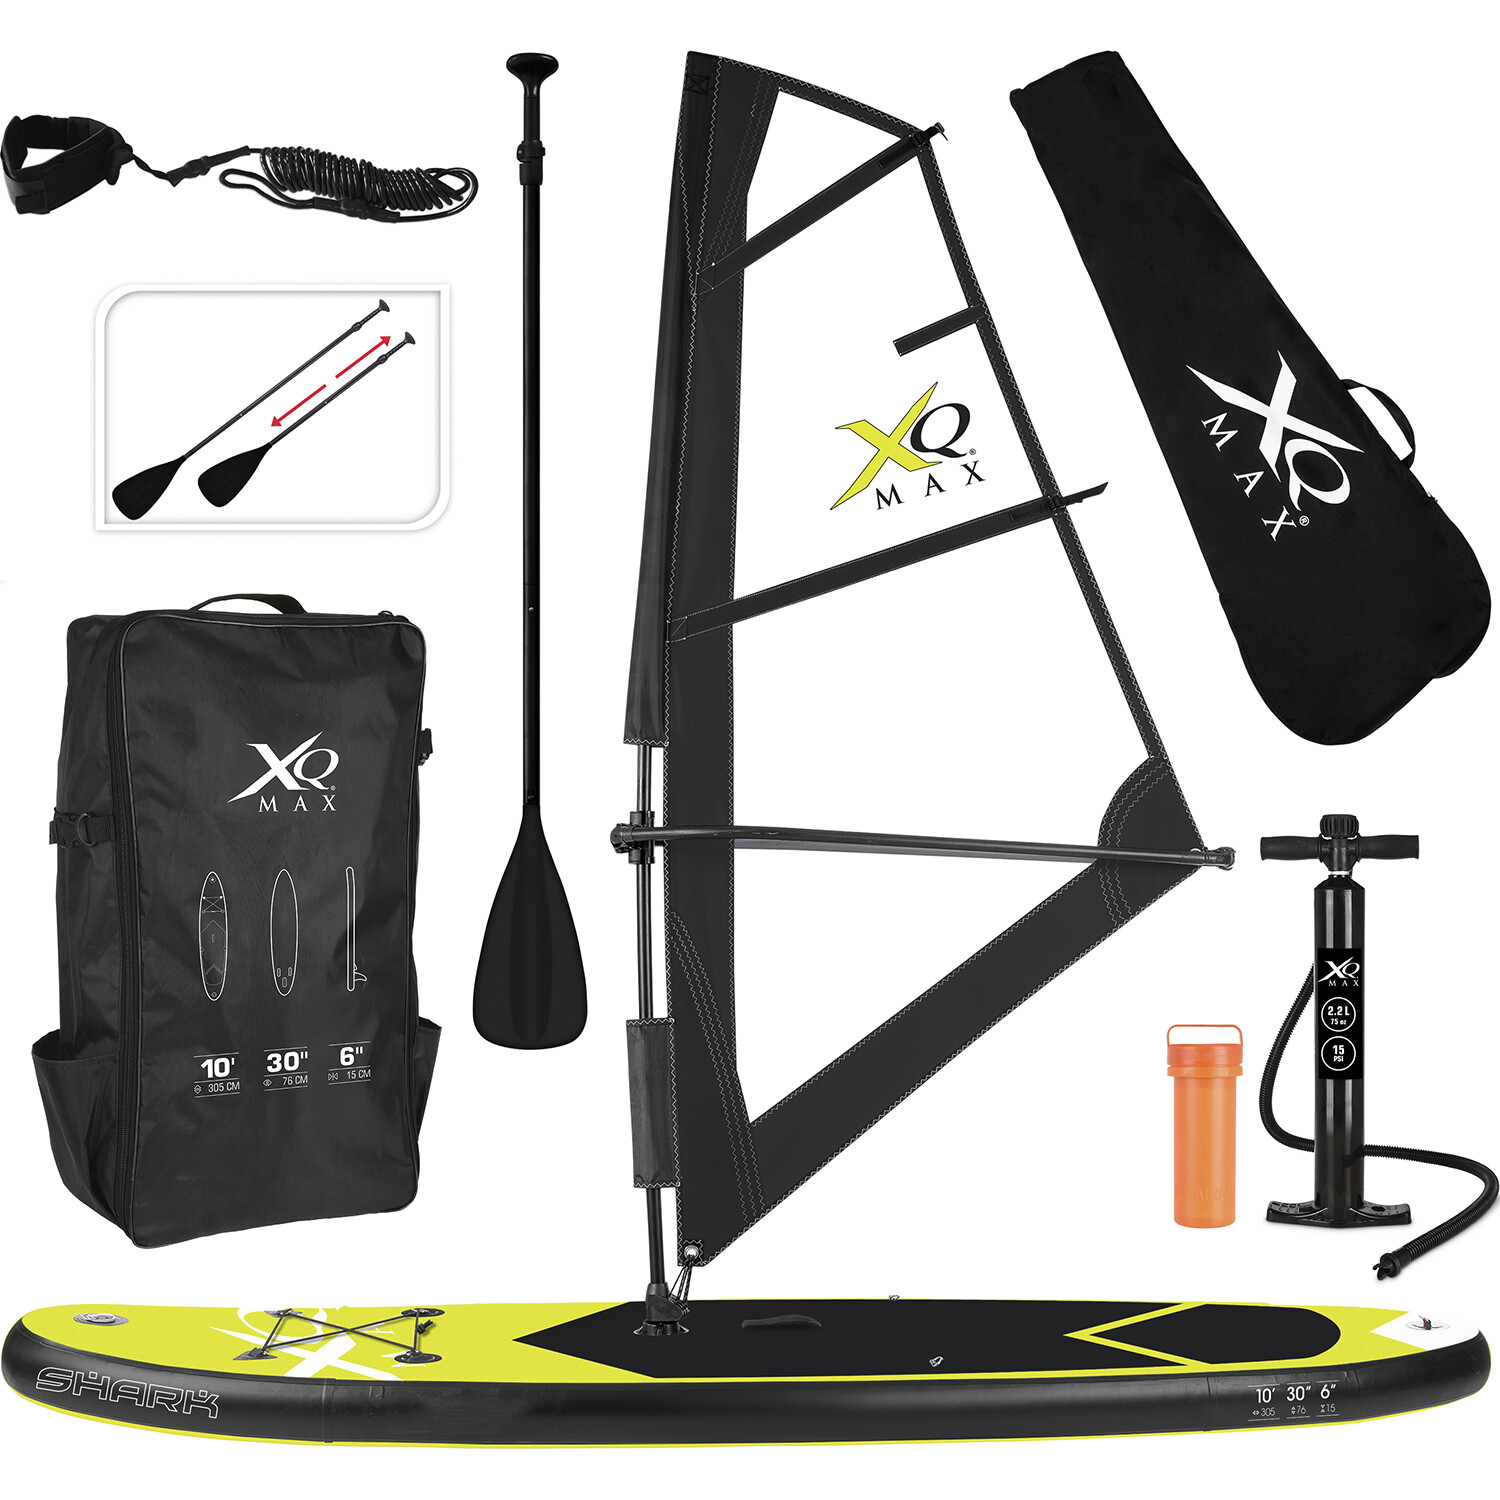 XQ Max Sup Point Model Paddleboard and Sail Kit Image 1